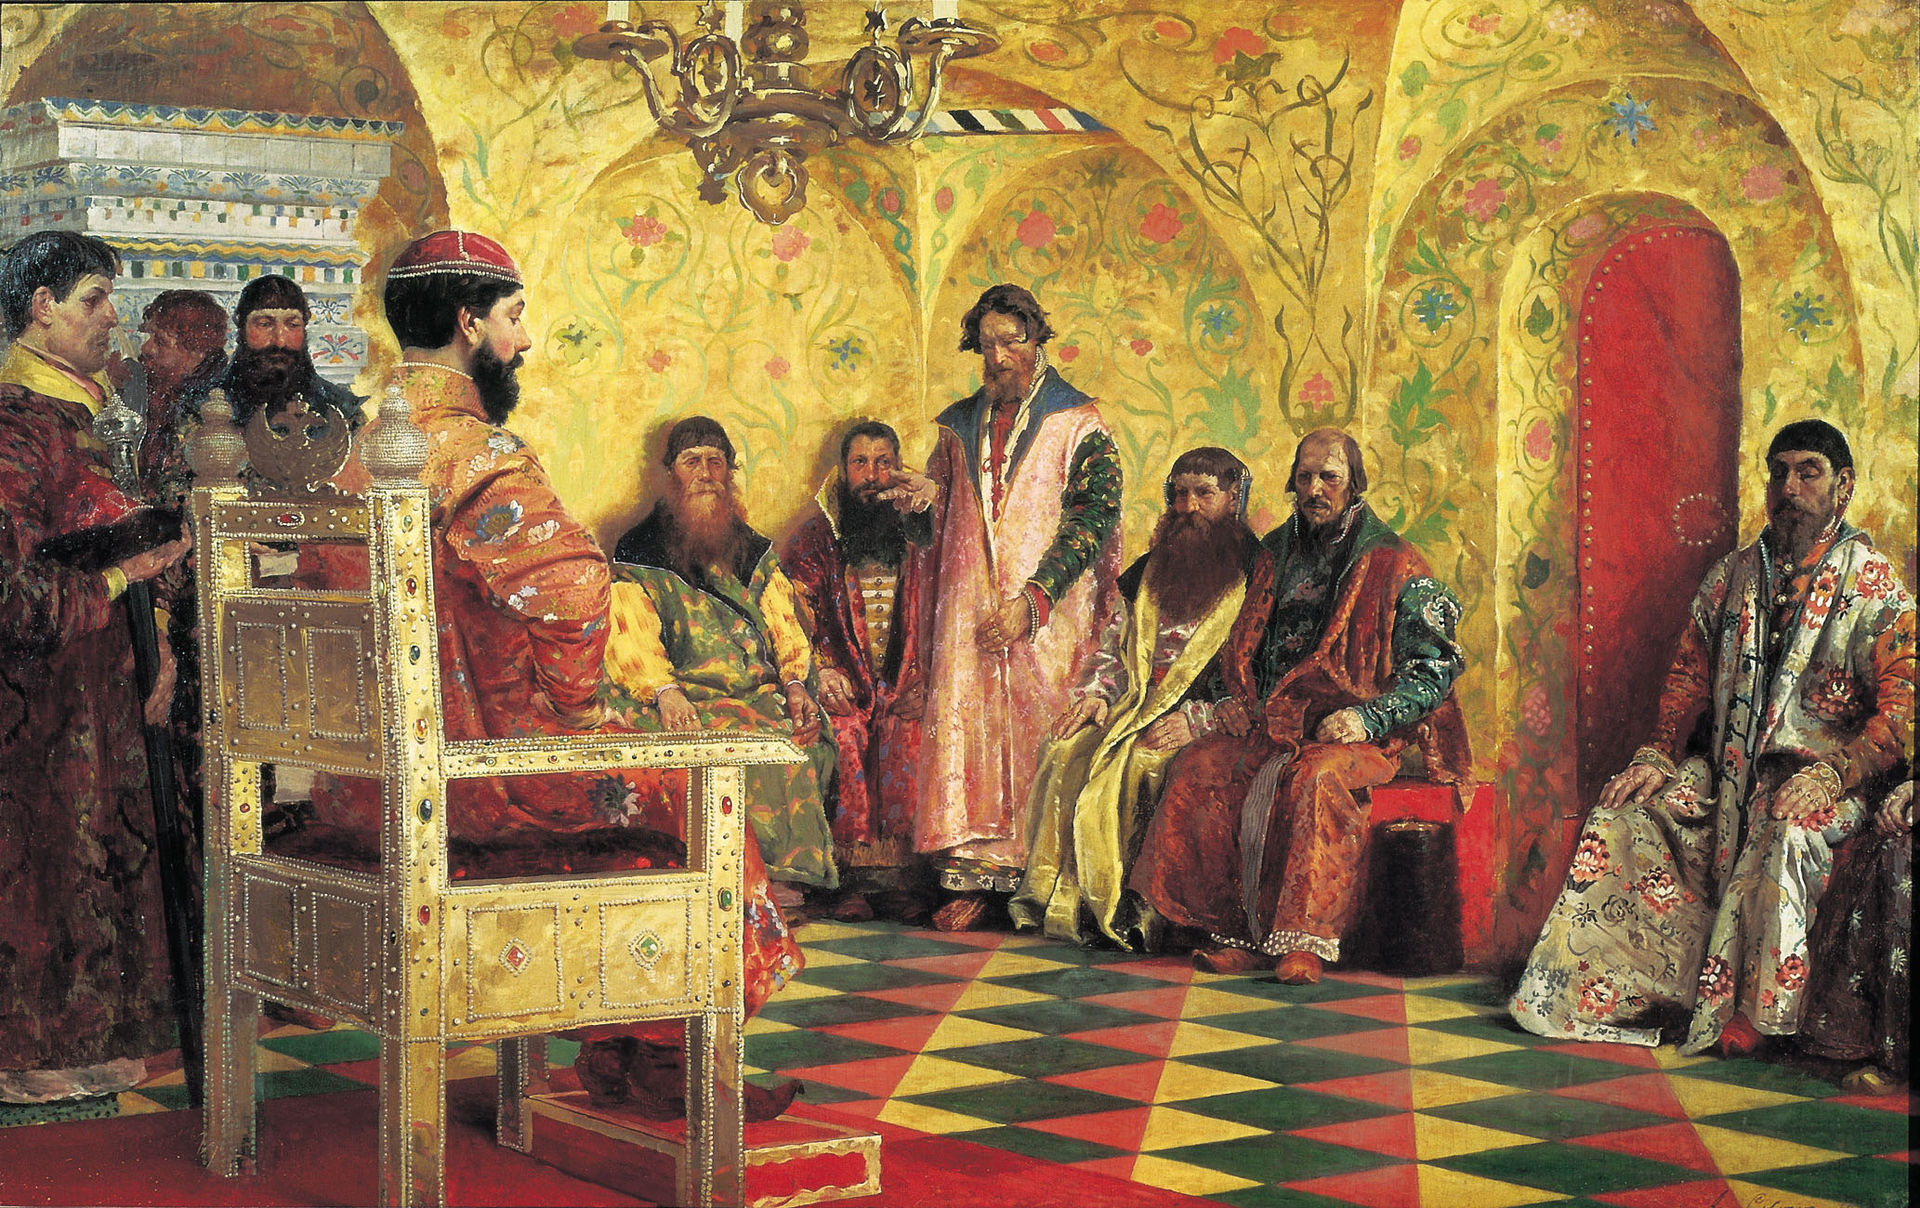 アンドレイ・リャブシキン「貴族会議に出席したツァーリ・ミハイル」(1893)

